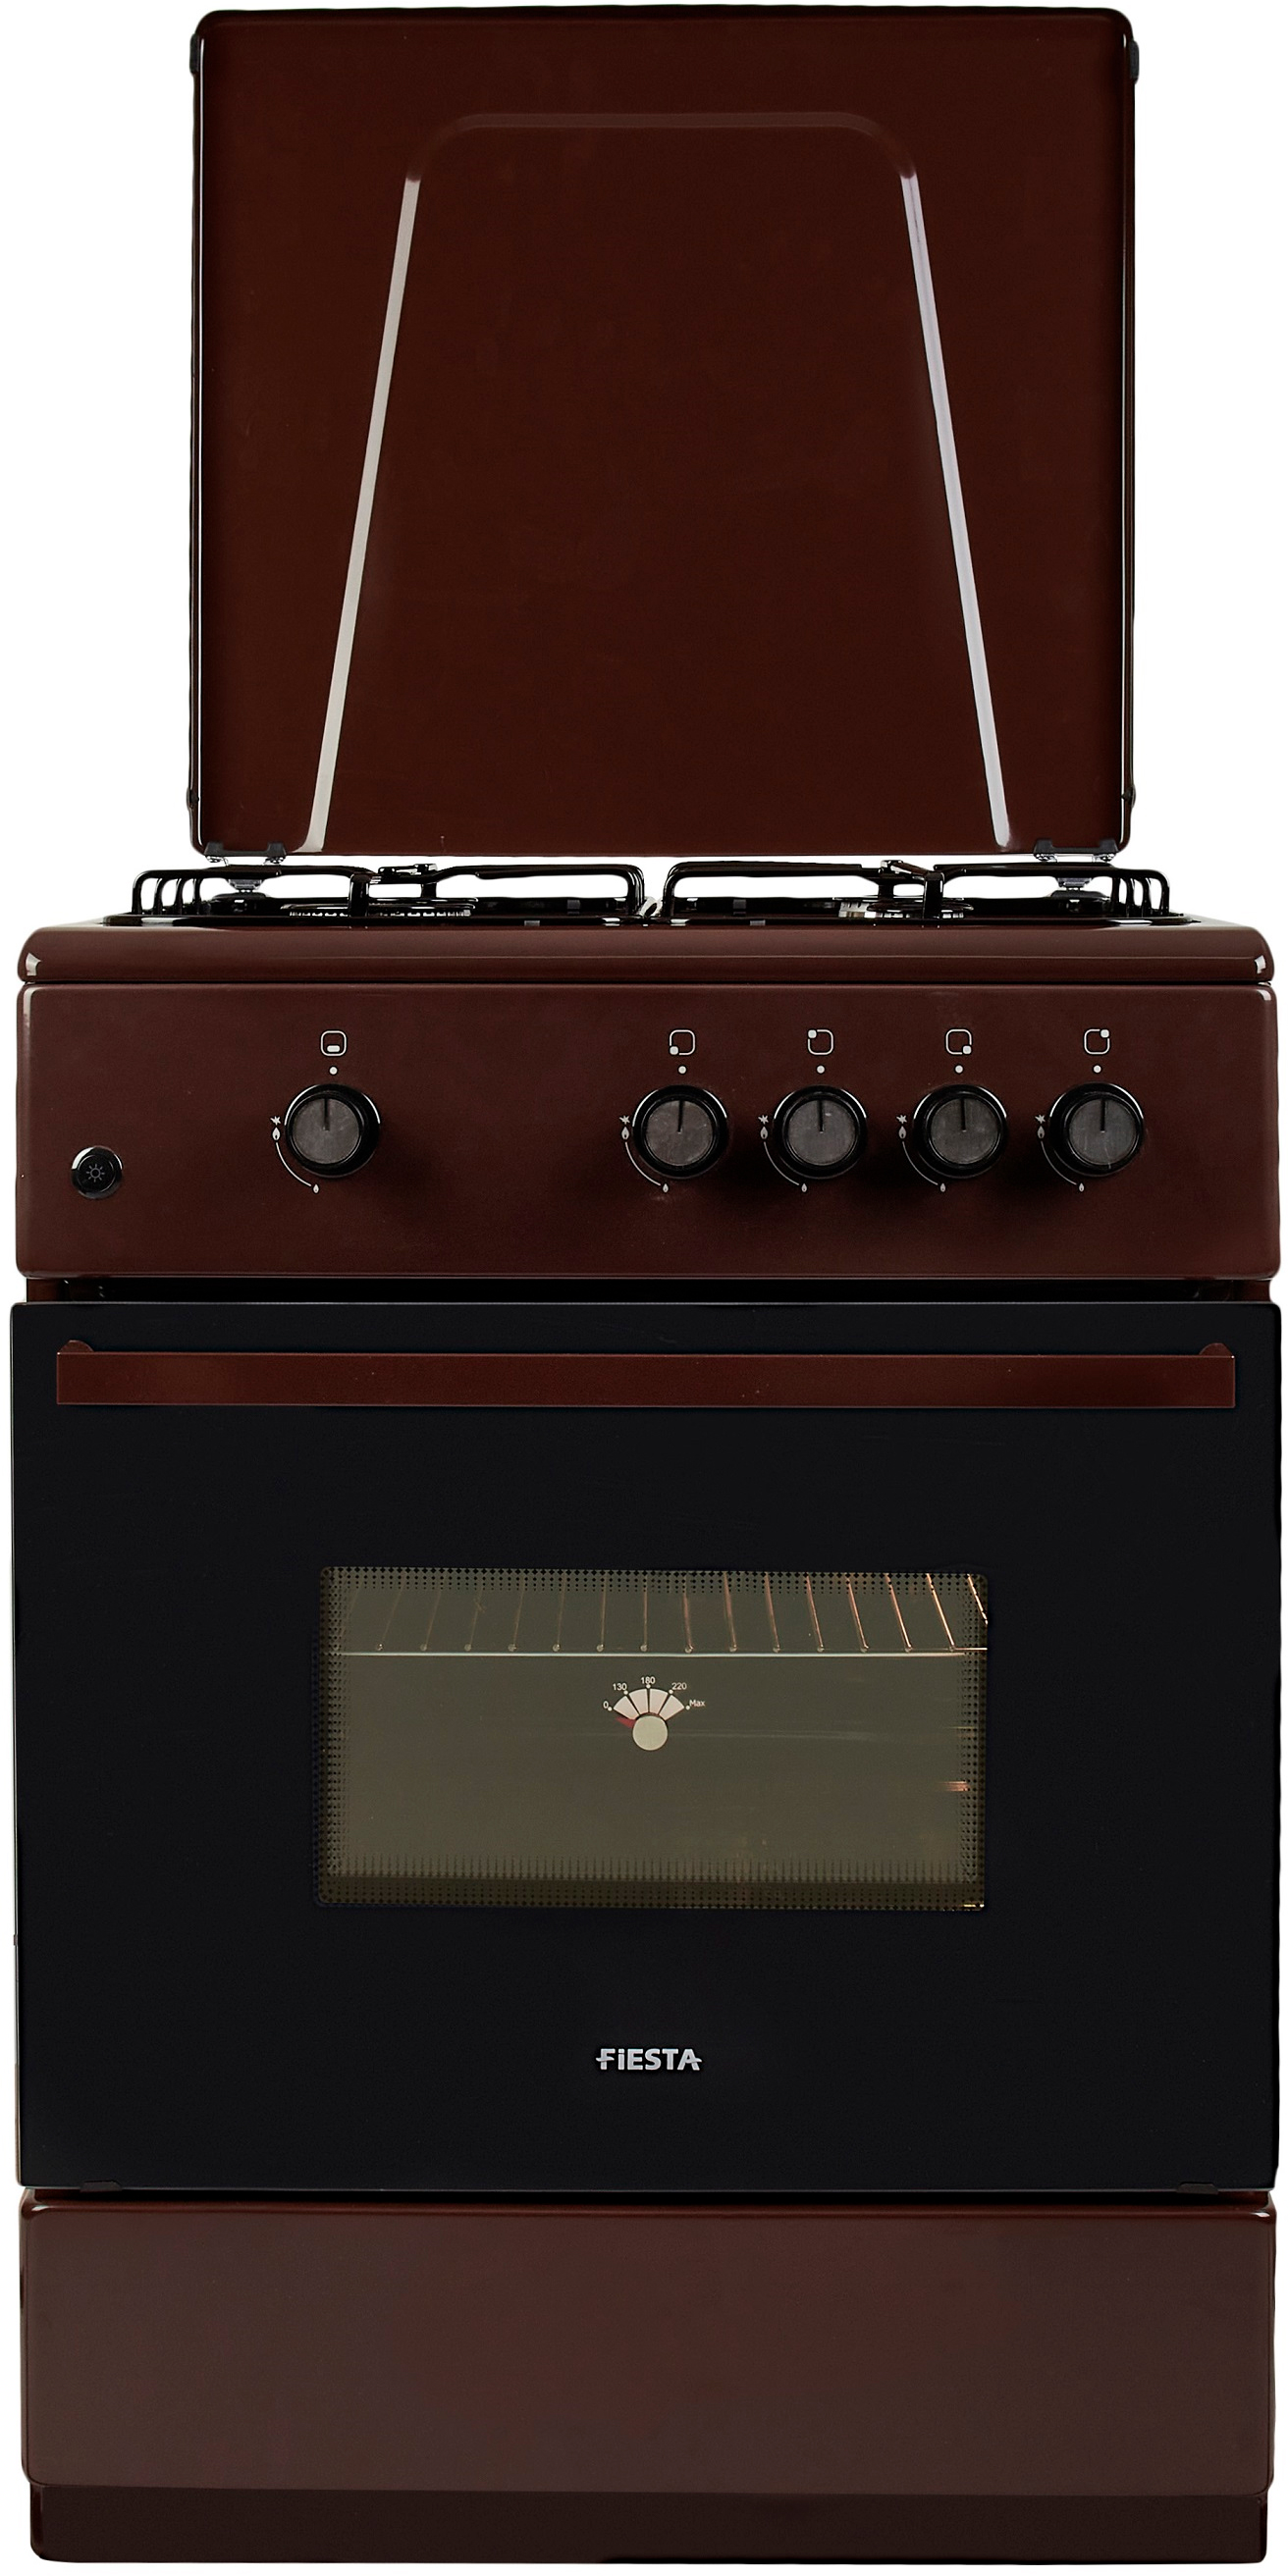 Кухонная плита Fiesta G 6403 SAD-B в интернет-магазине, главное фото